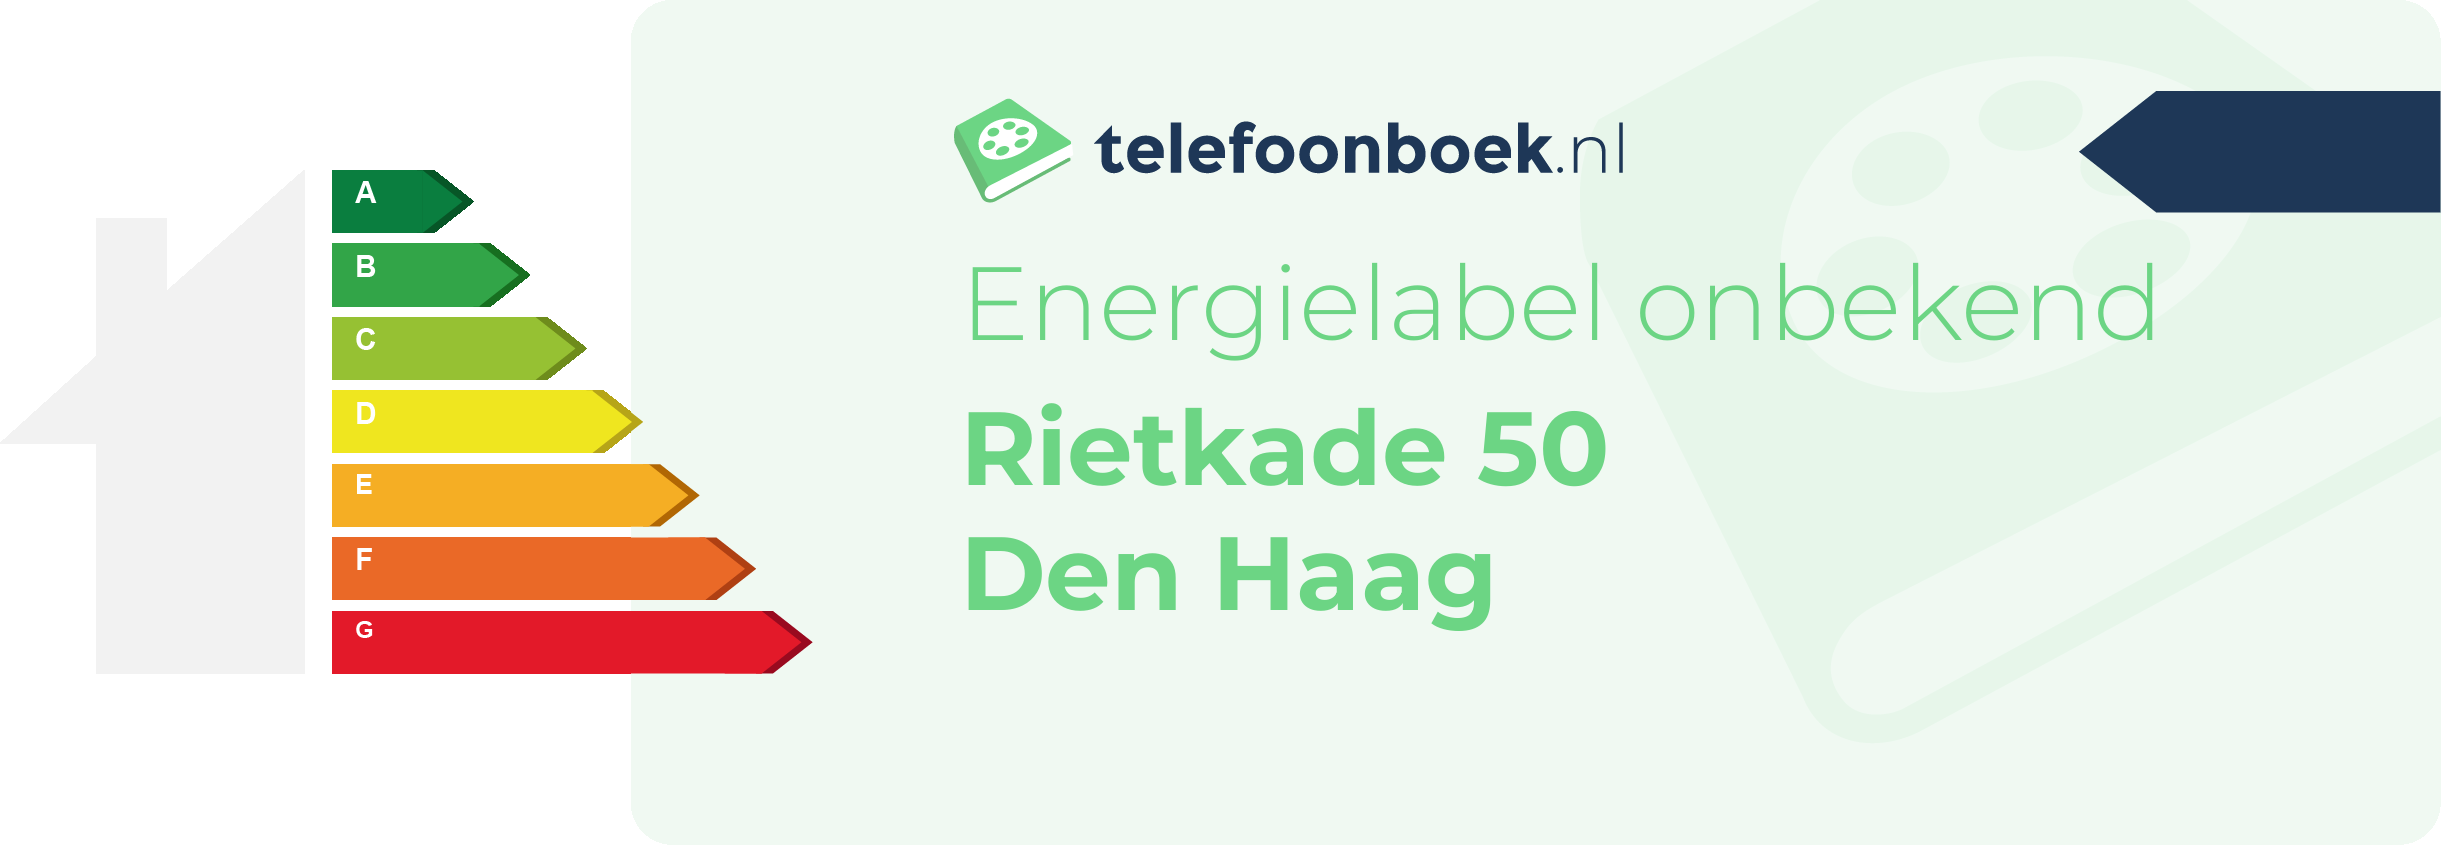 Energielabel Rietkade 50 Den Haag